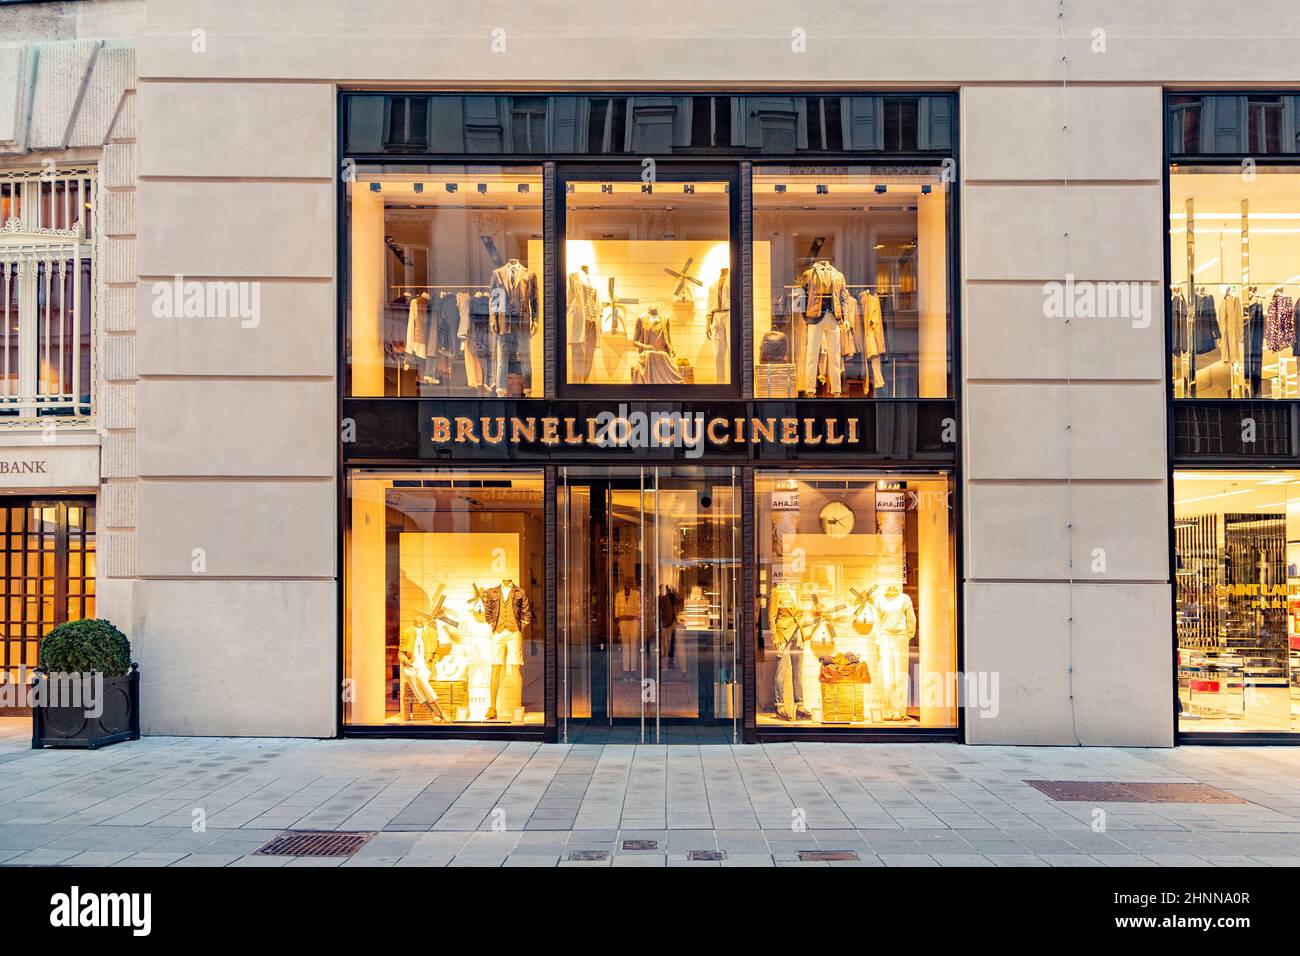 Turistas extranjeros de países europeos y árabes visitan viena para ir de compras en tiendas de alta costura como Brunello Cucinelli y otros Foto de stock